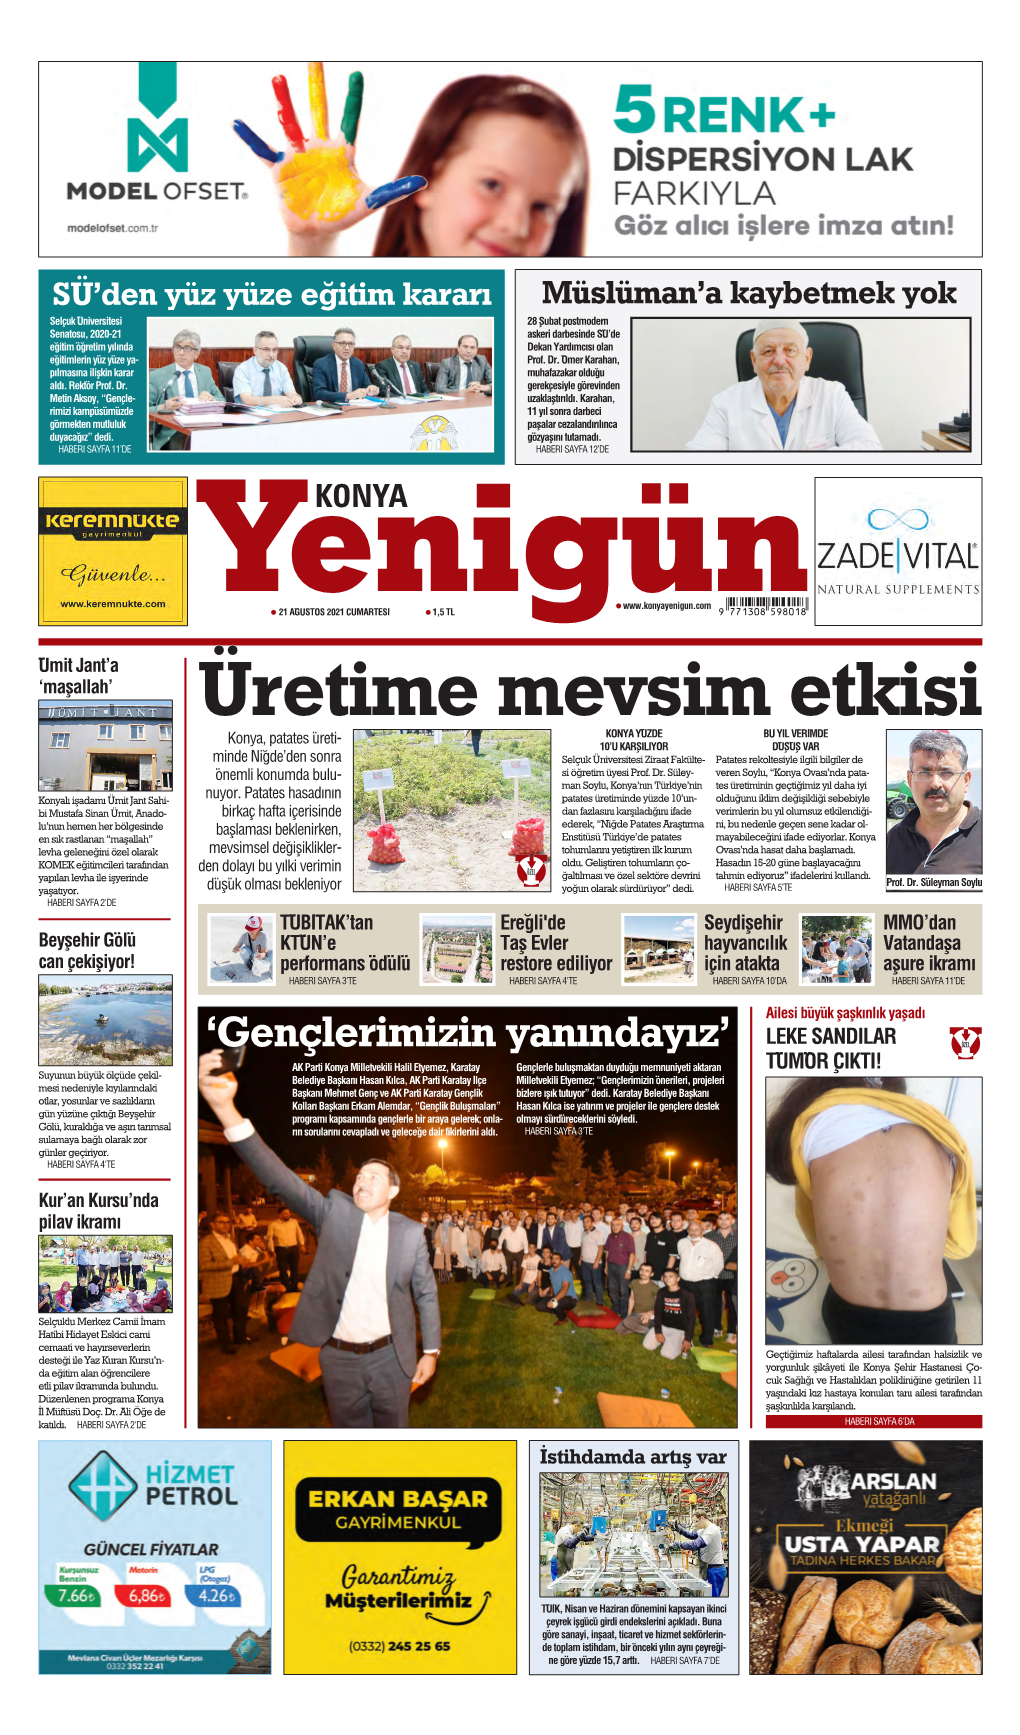 Konya Yenigün Gazetesi